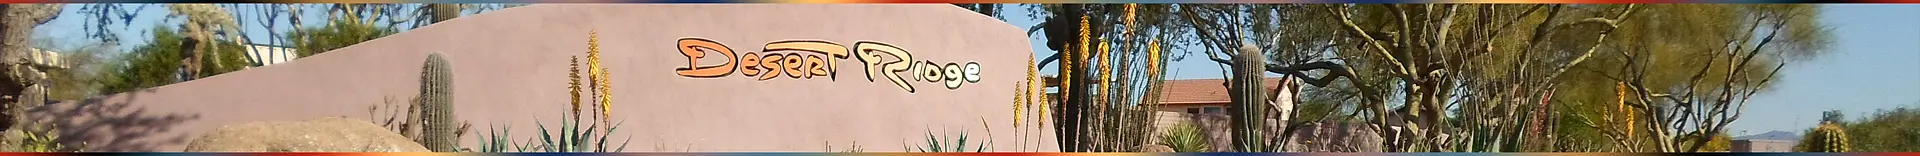 Desert Ridge Monument Sign